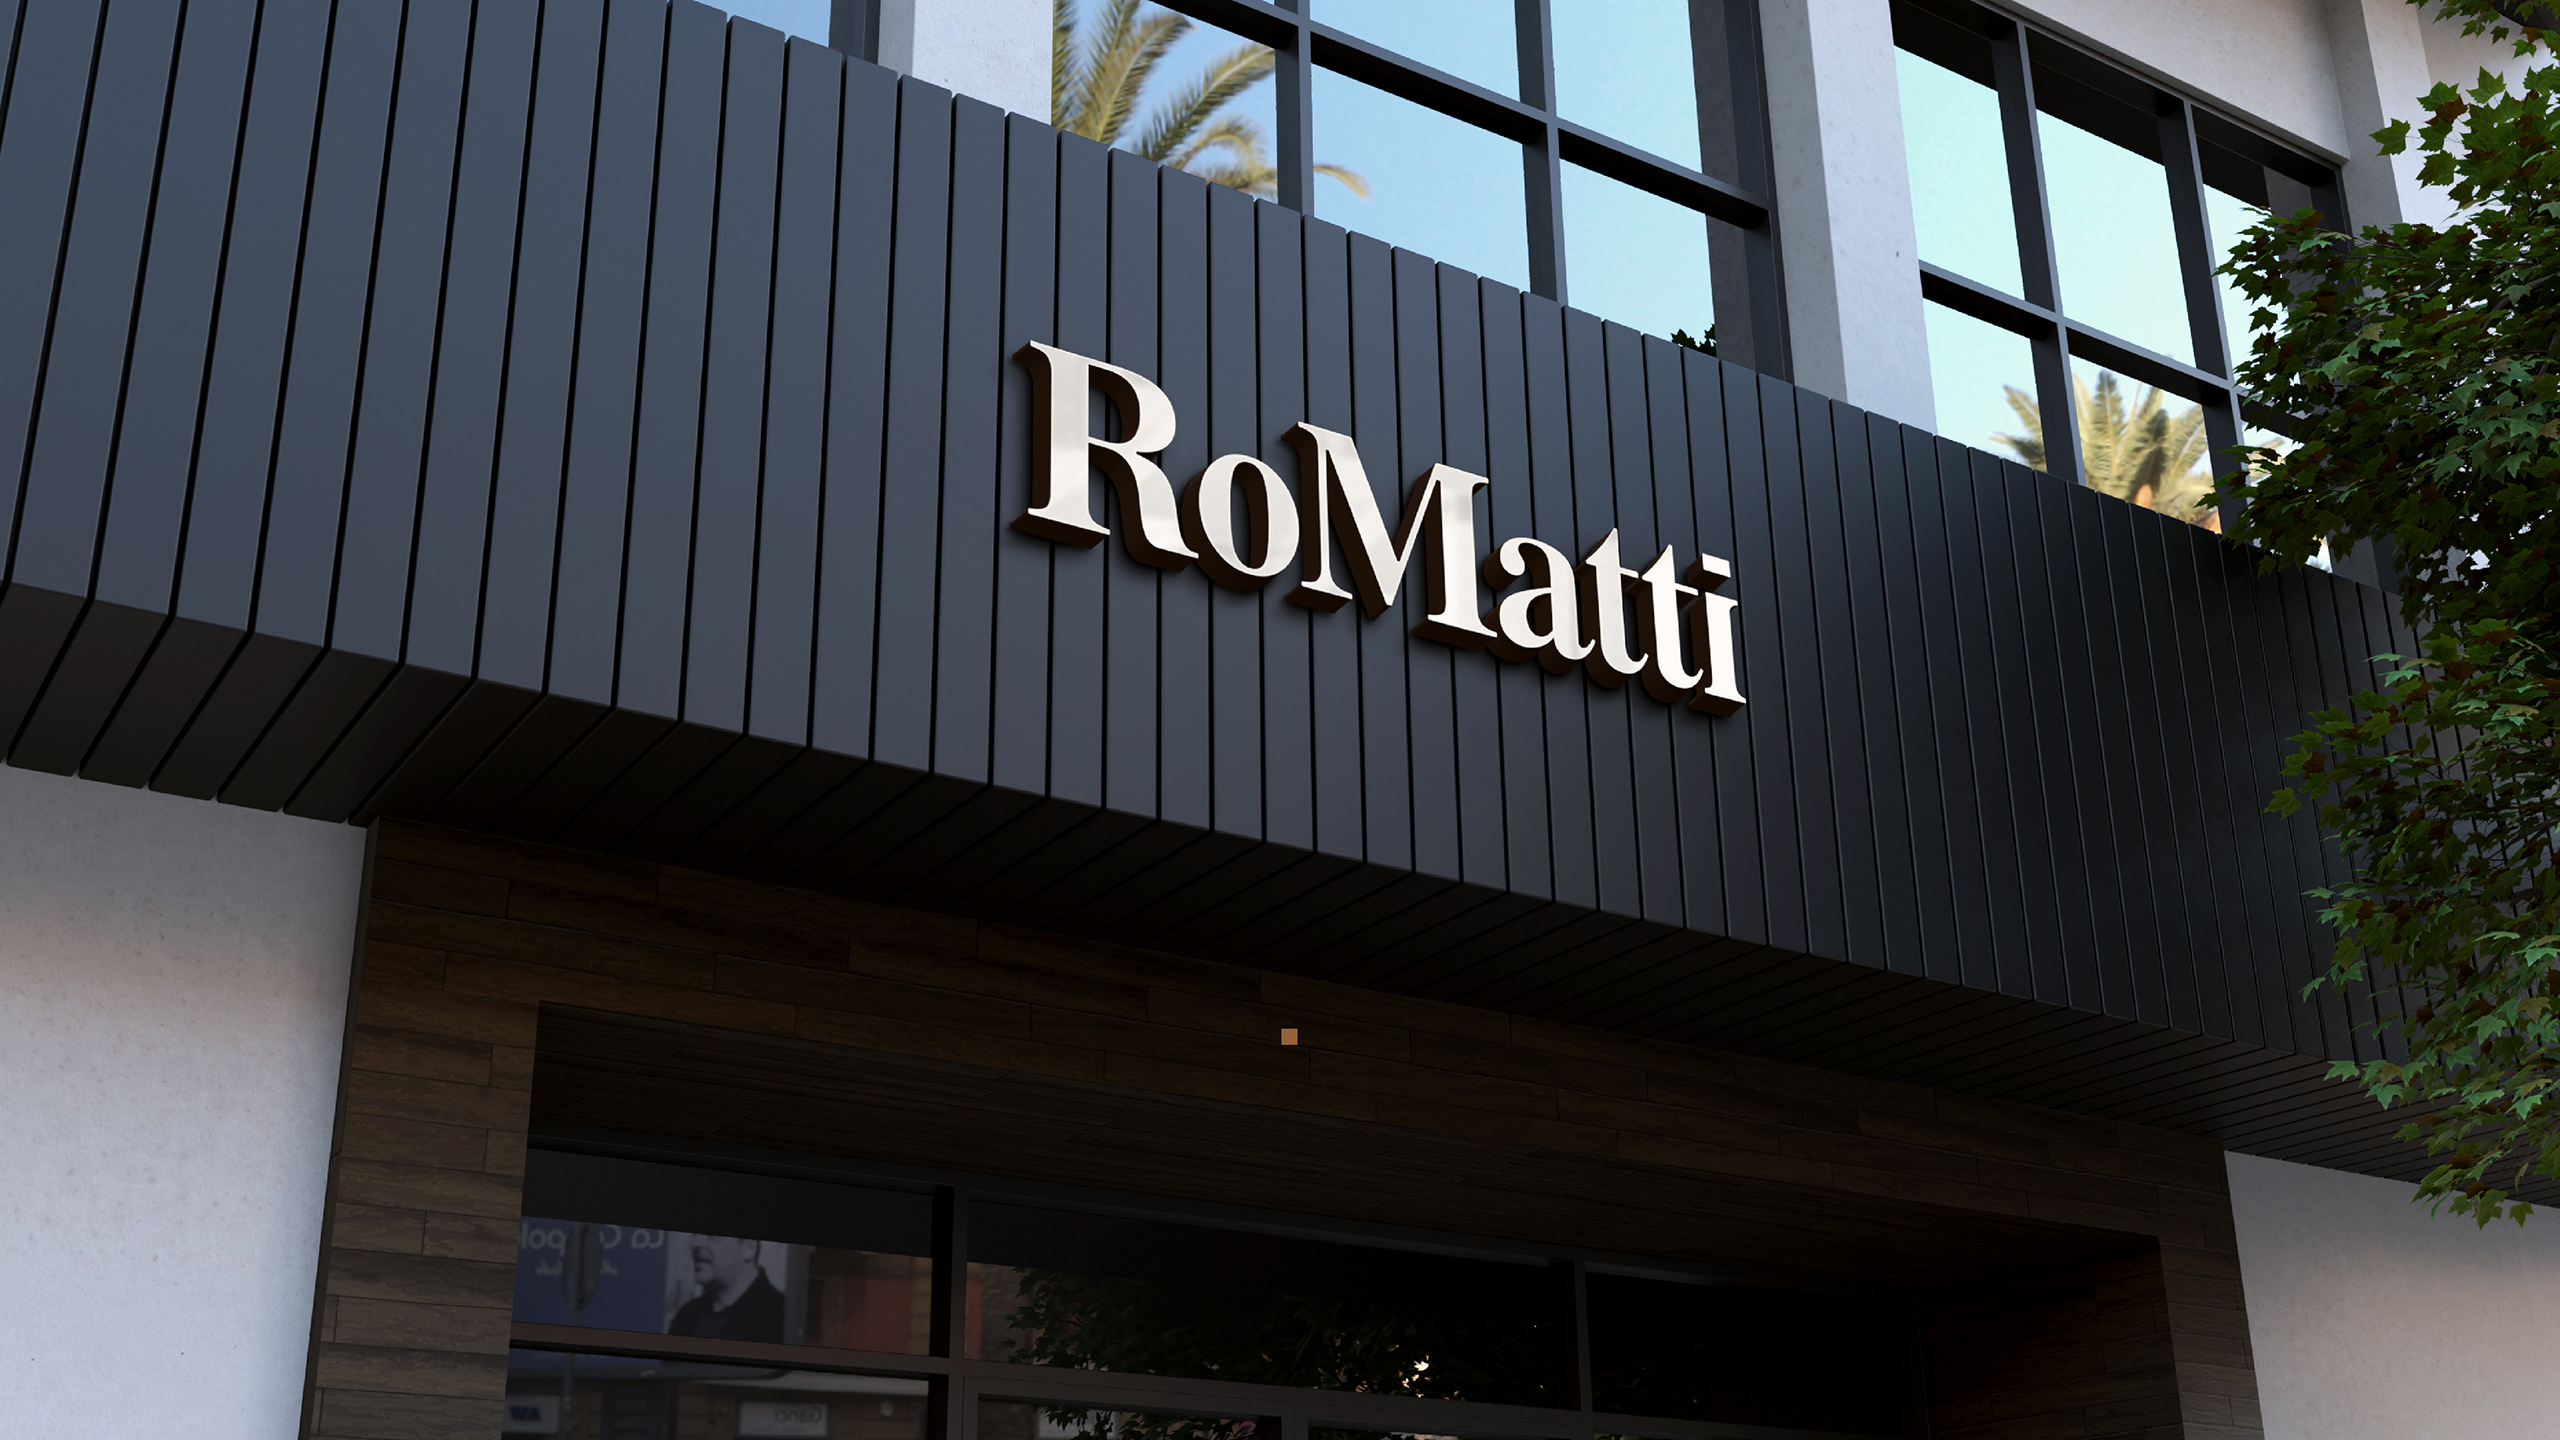 RoMatti 案例整理网页尺寸-14.jpg